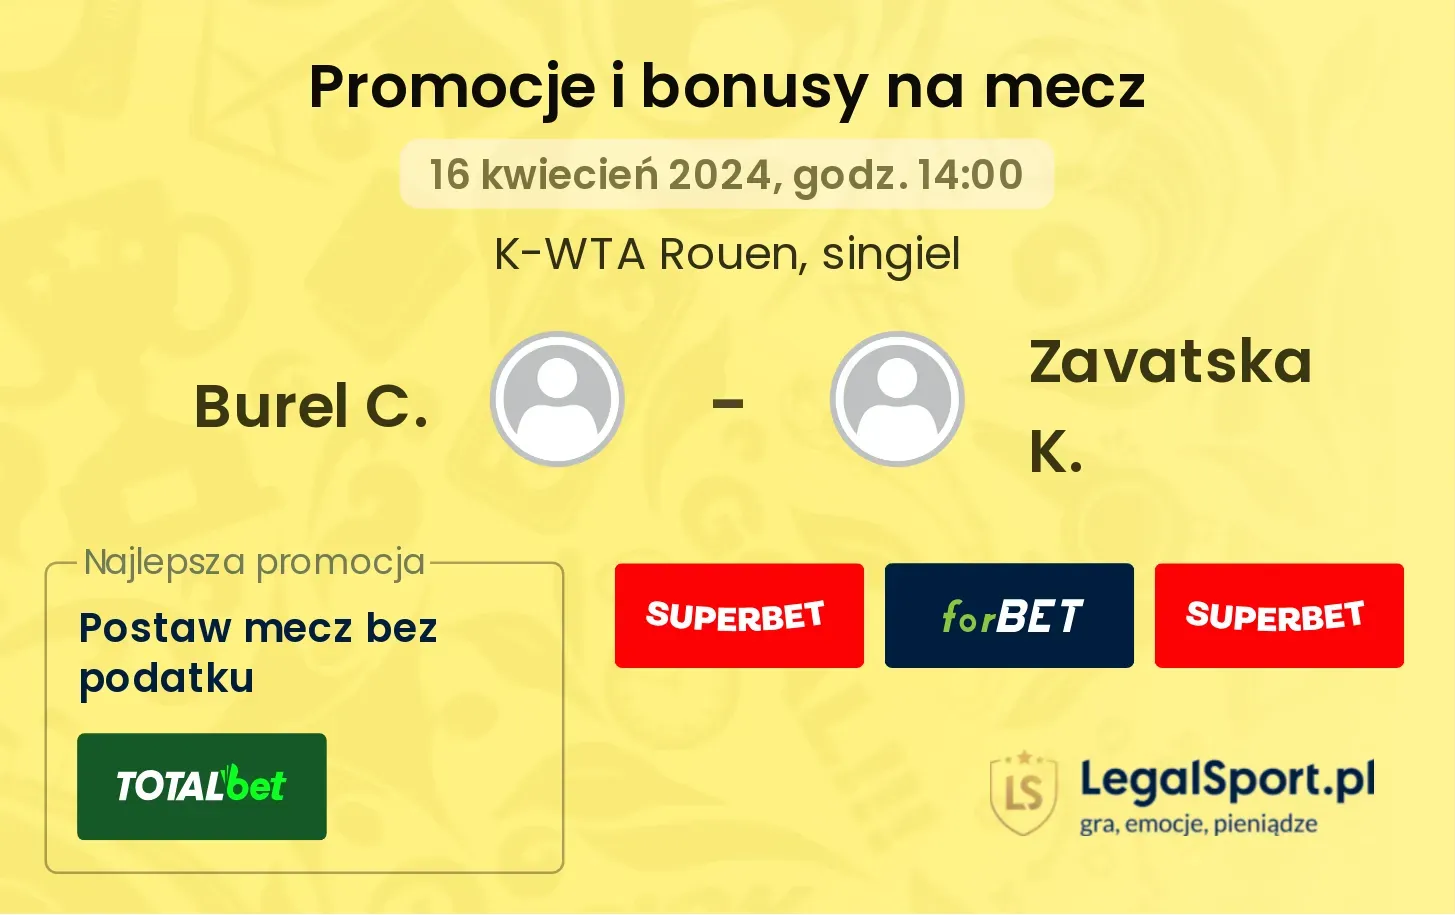 Burel C. - Zavatska K. promocje bonusy na mecz